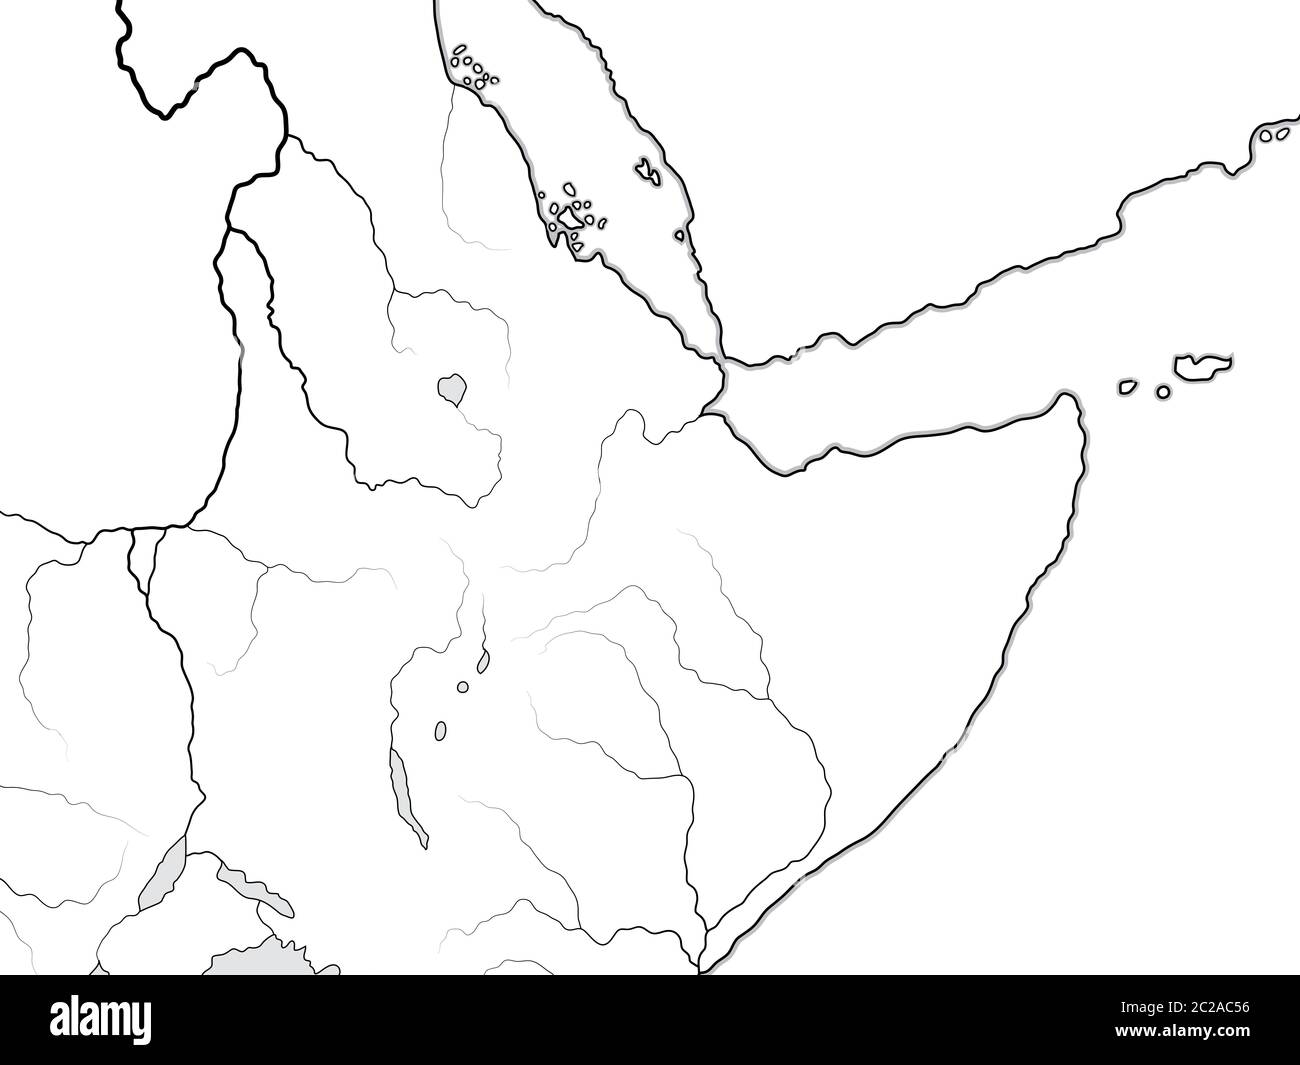 Mappa mondiale DI NUBIA, ETIOPIA, SOMALIA: Kush, Punt, Aksum, Abissinia, Sudan. Grafico con Corno d'Africa. Foto Stock